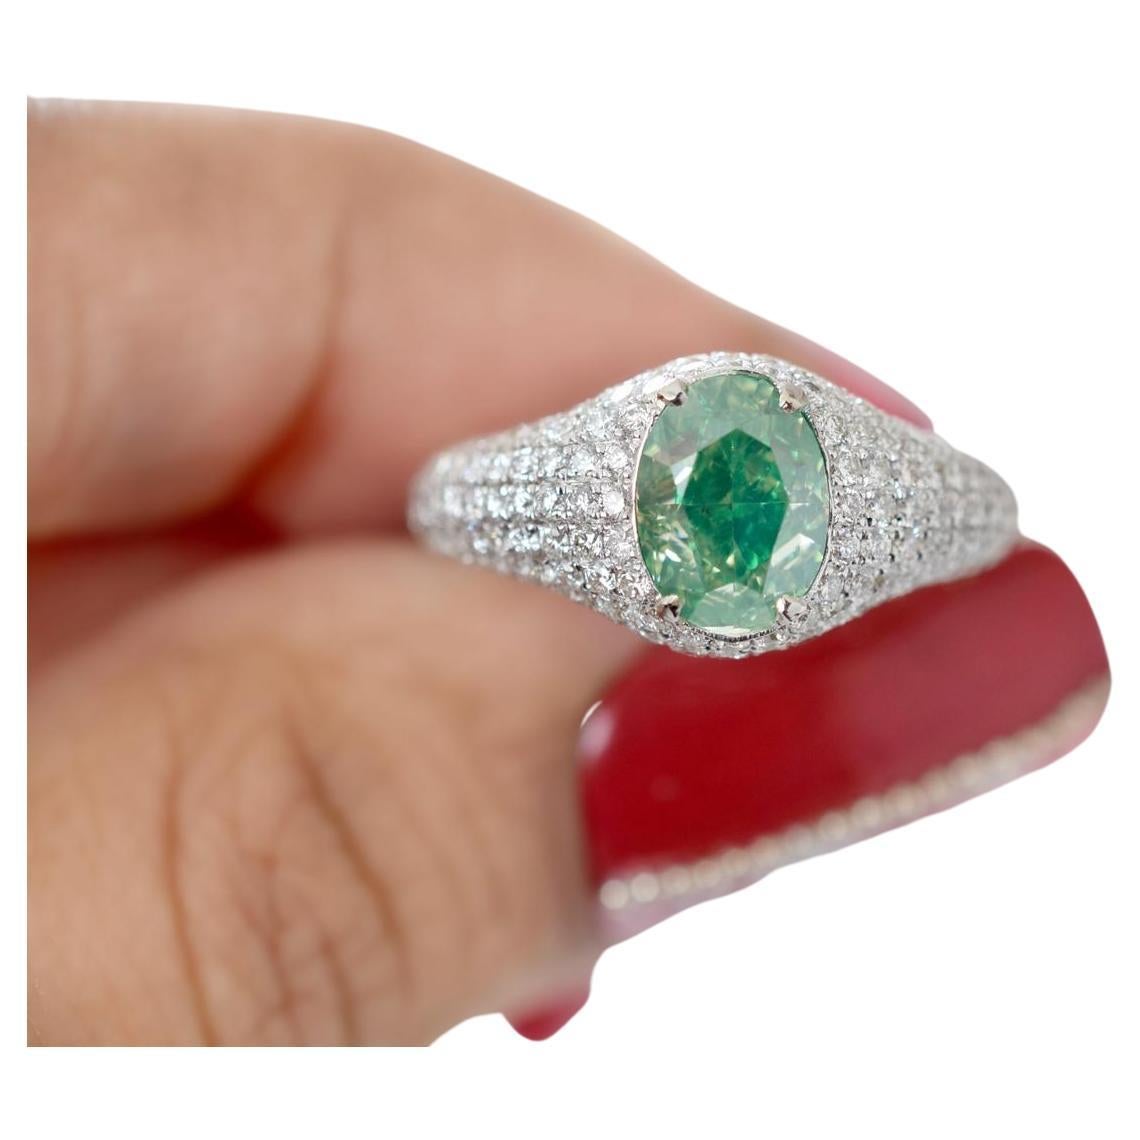 Bague fantaisie en diamant jaune vert de 1,52 carat, pureté I1, certifiée GIA